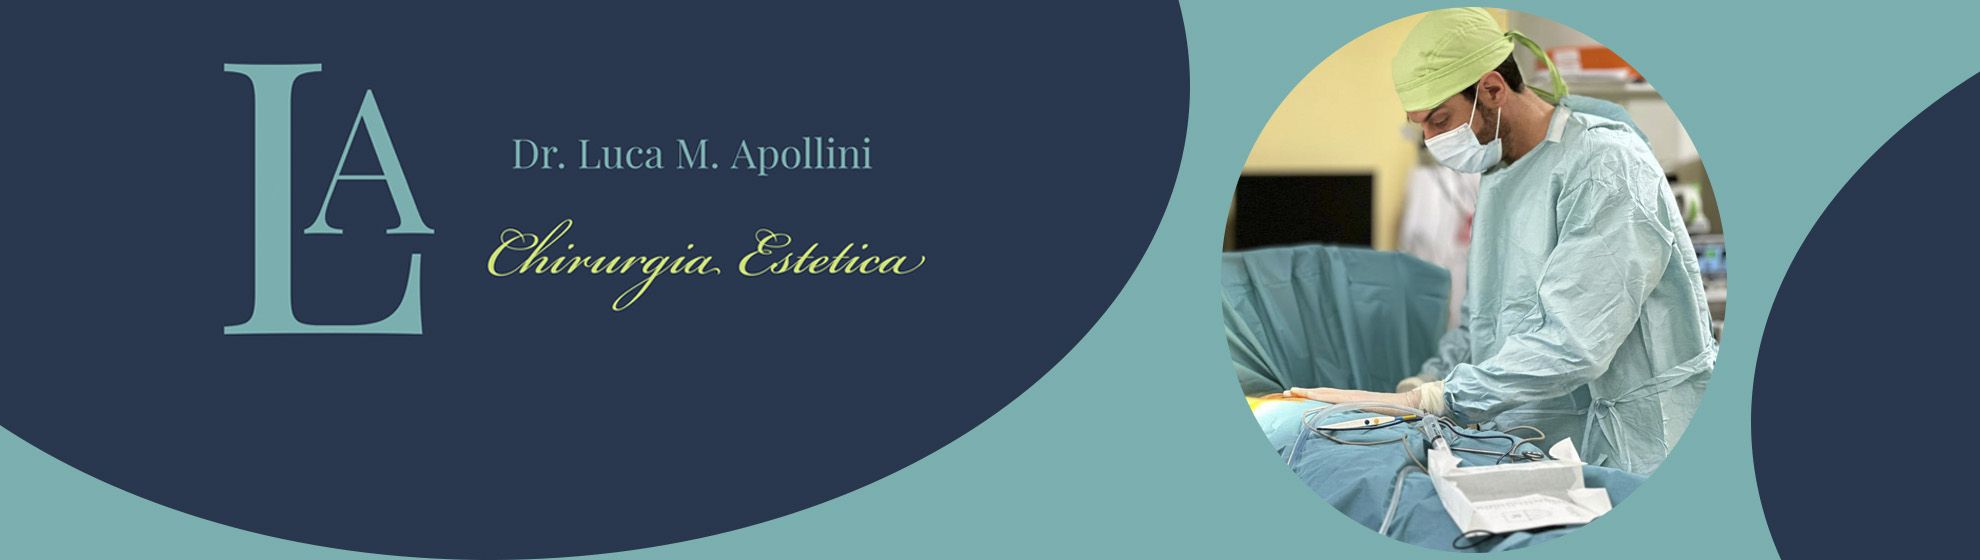 Dr. Luca M. Apollini